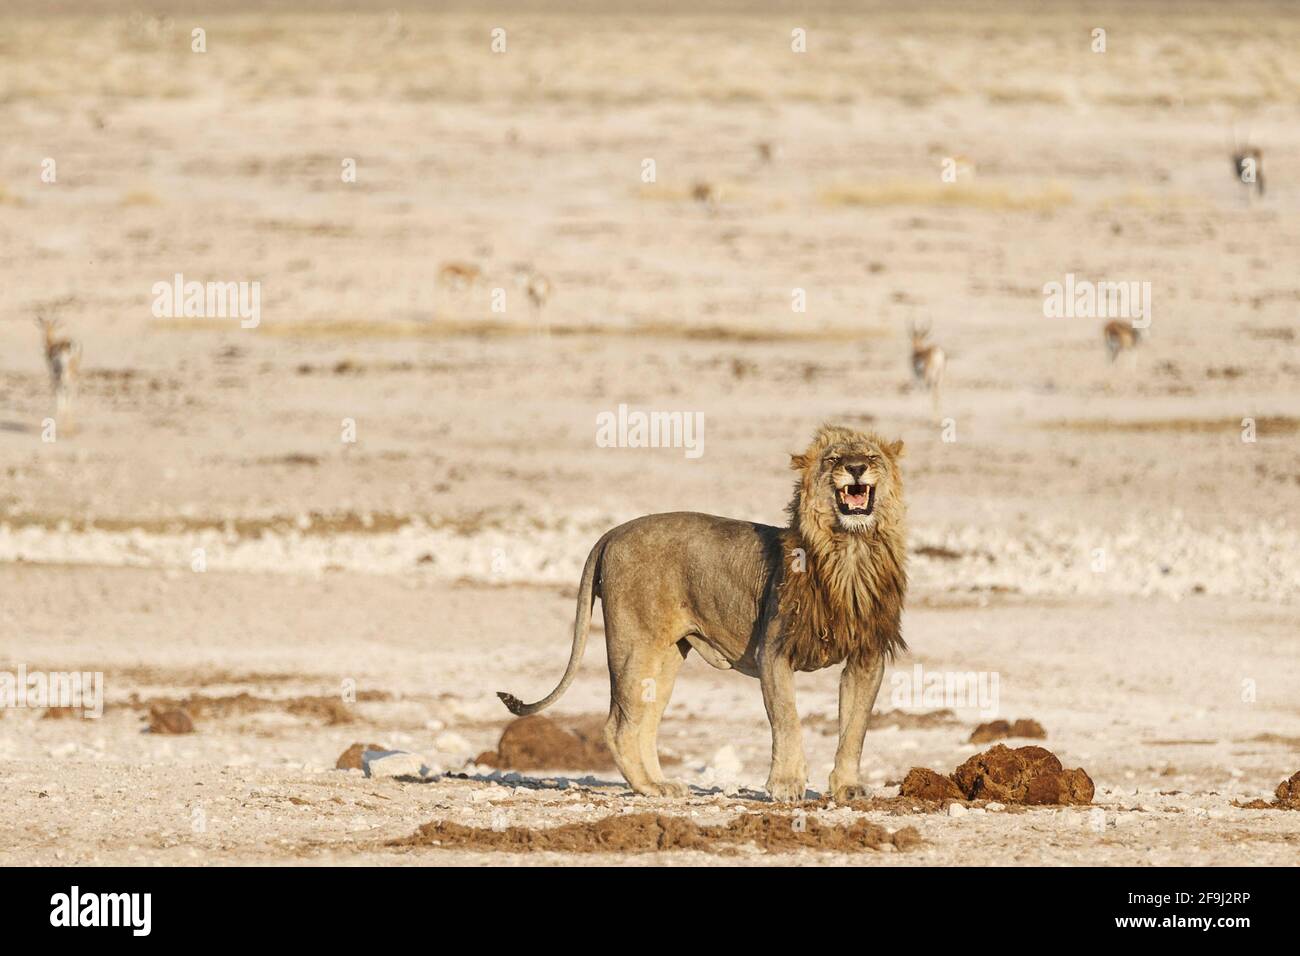 Lion africain (Panthera Leo) roar. Parc national d'Etosha, Namibie, Afrique Banque D'Images